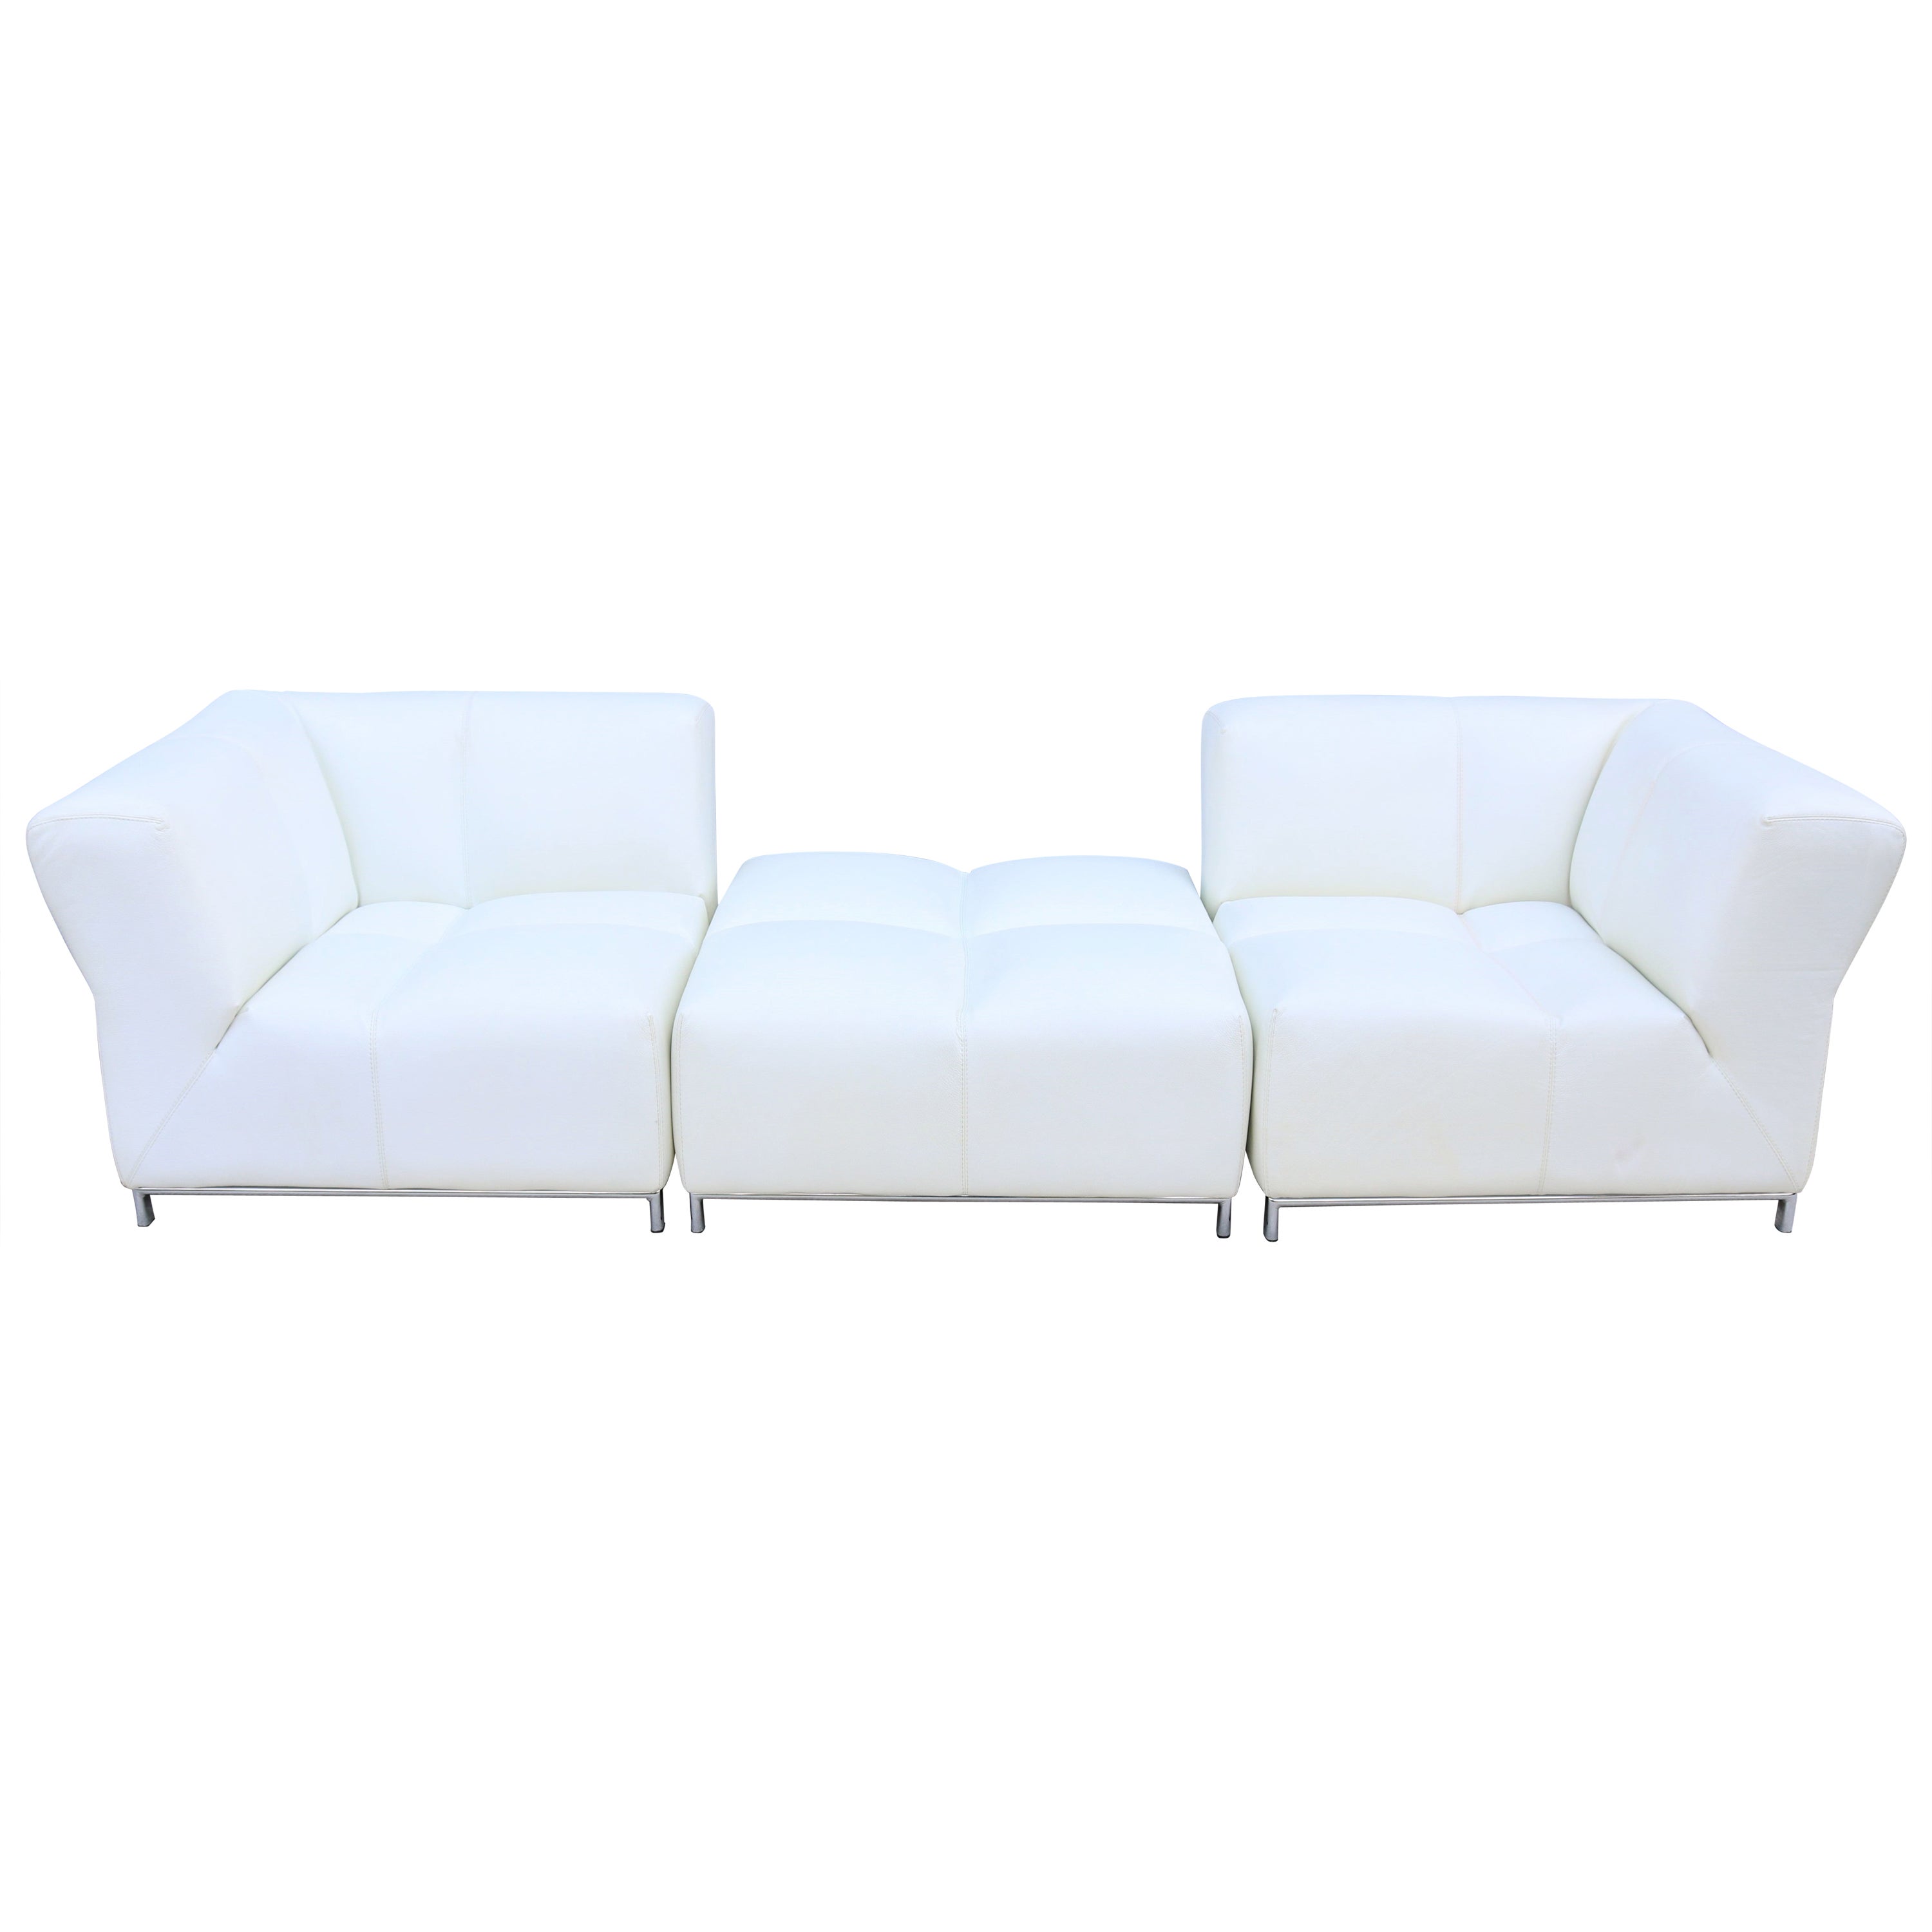 Italian Modern Domino Modular White Leather Sofa by Gamma Arredamenti For Sale